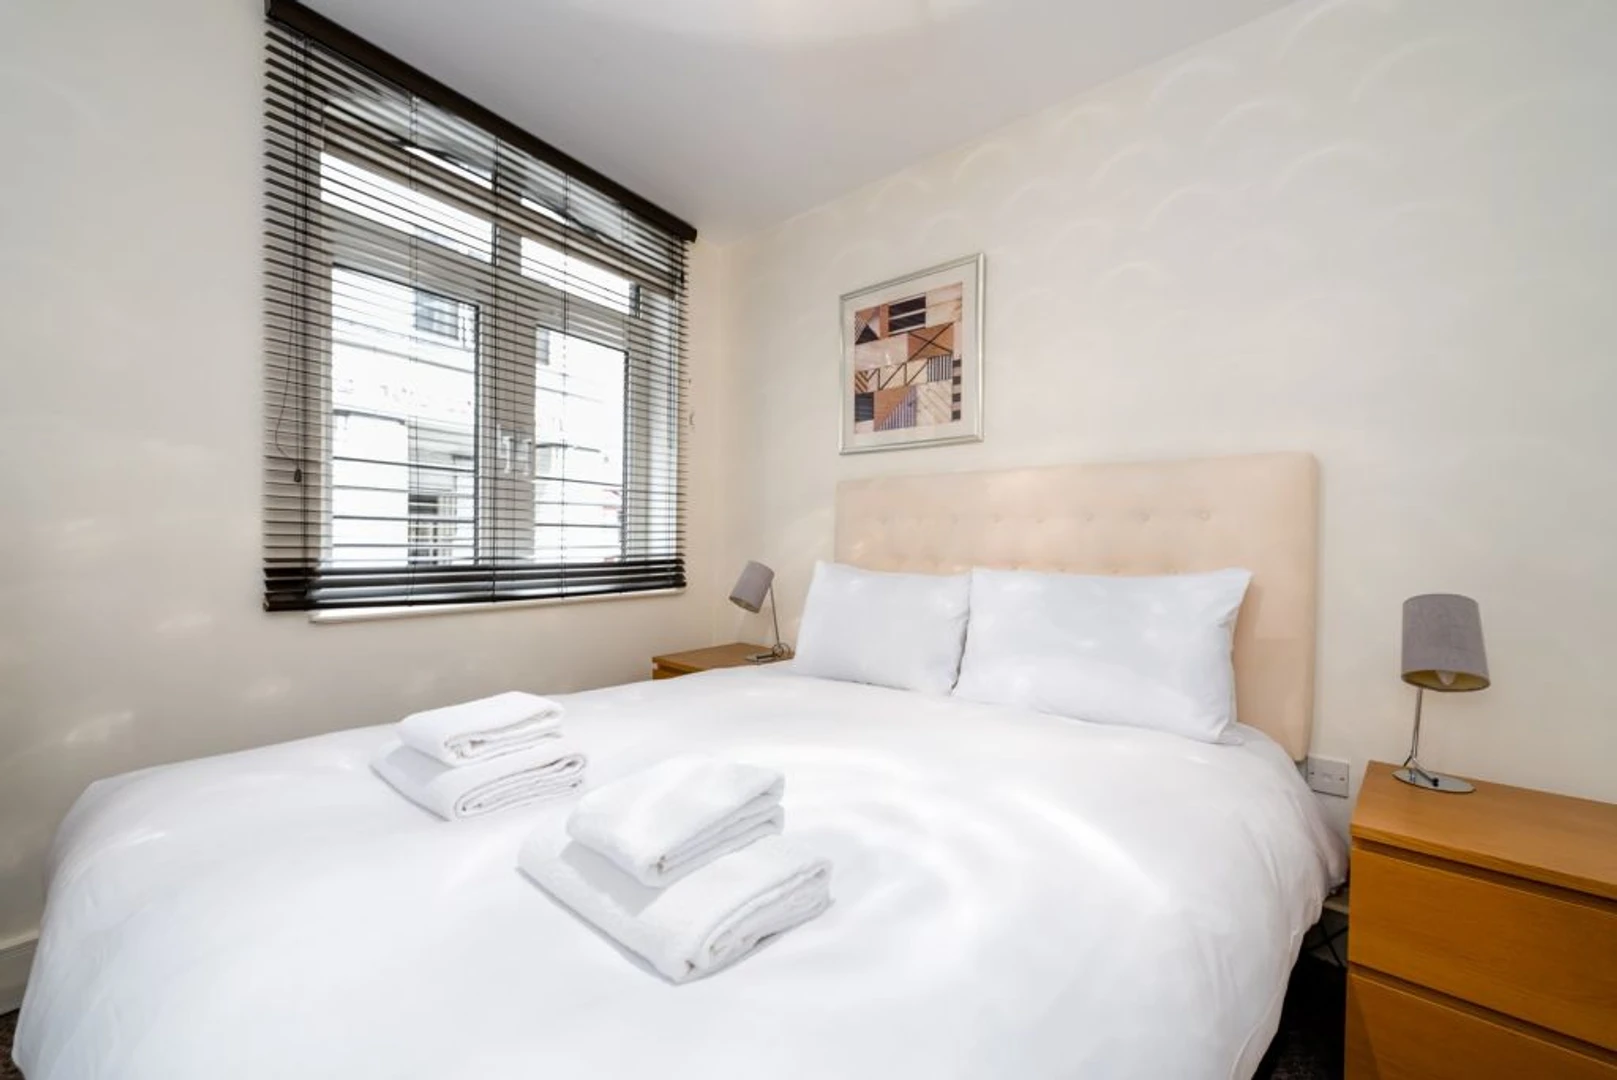 City Of London içinde 3 yatak odalı konaklama